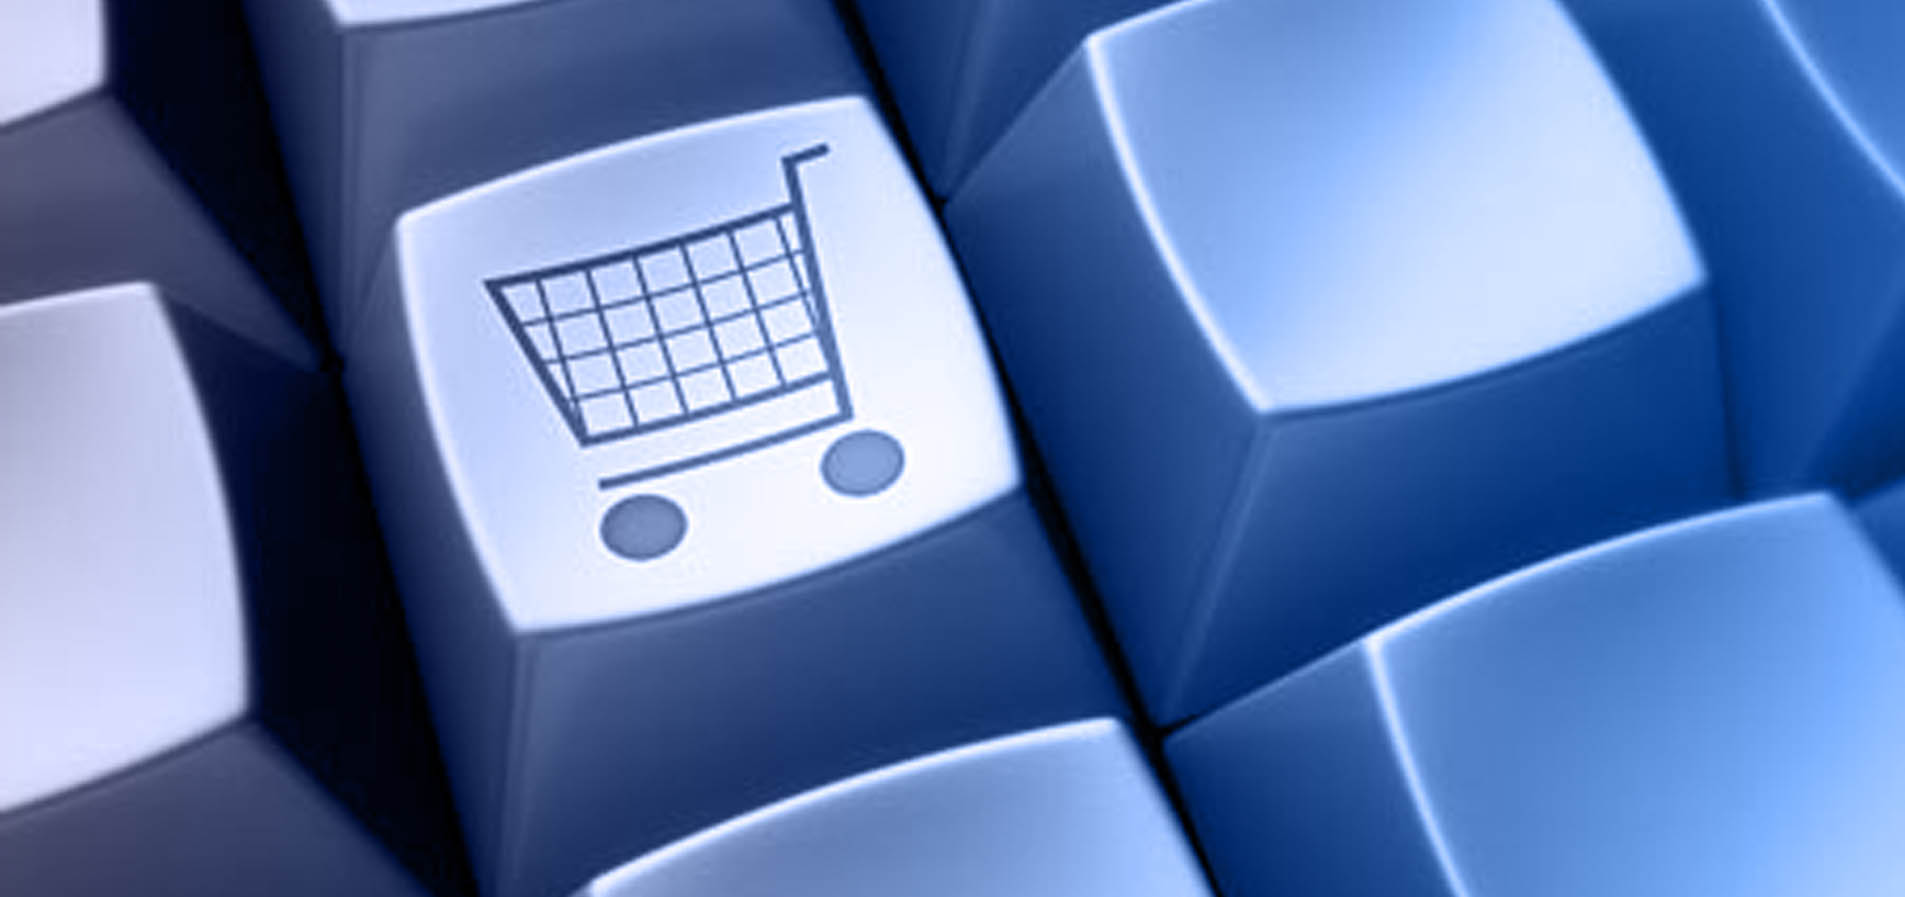 Aumentar la tasa de conversión en un e-commerce